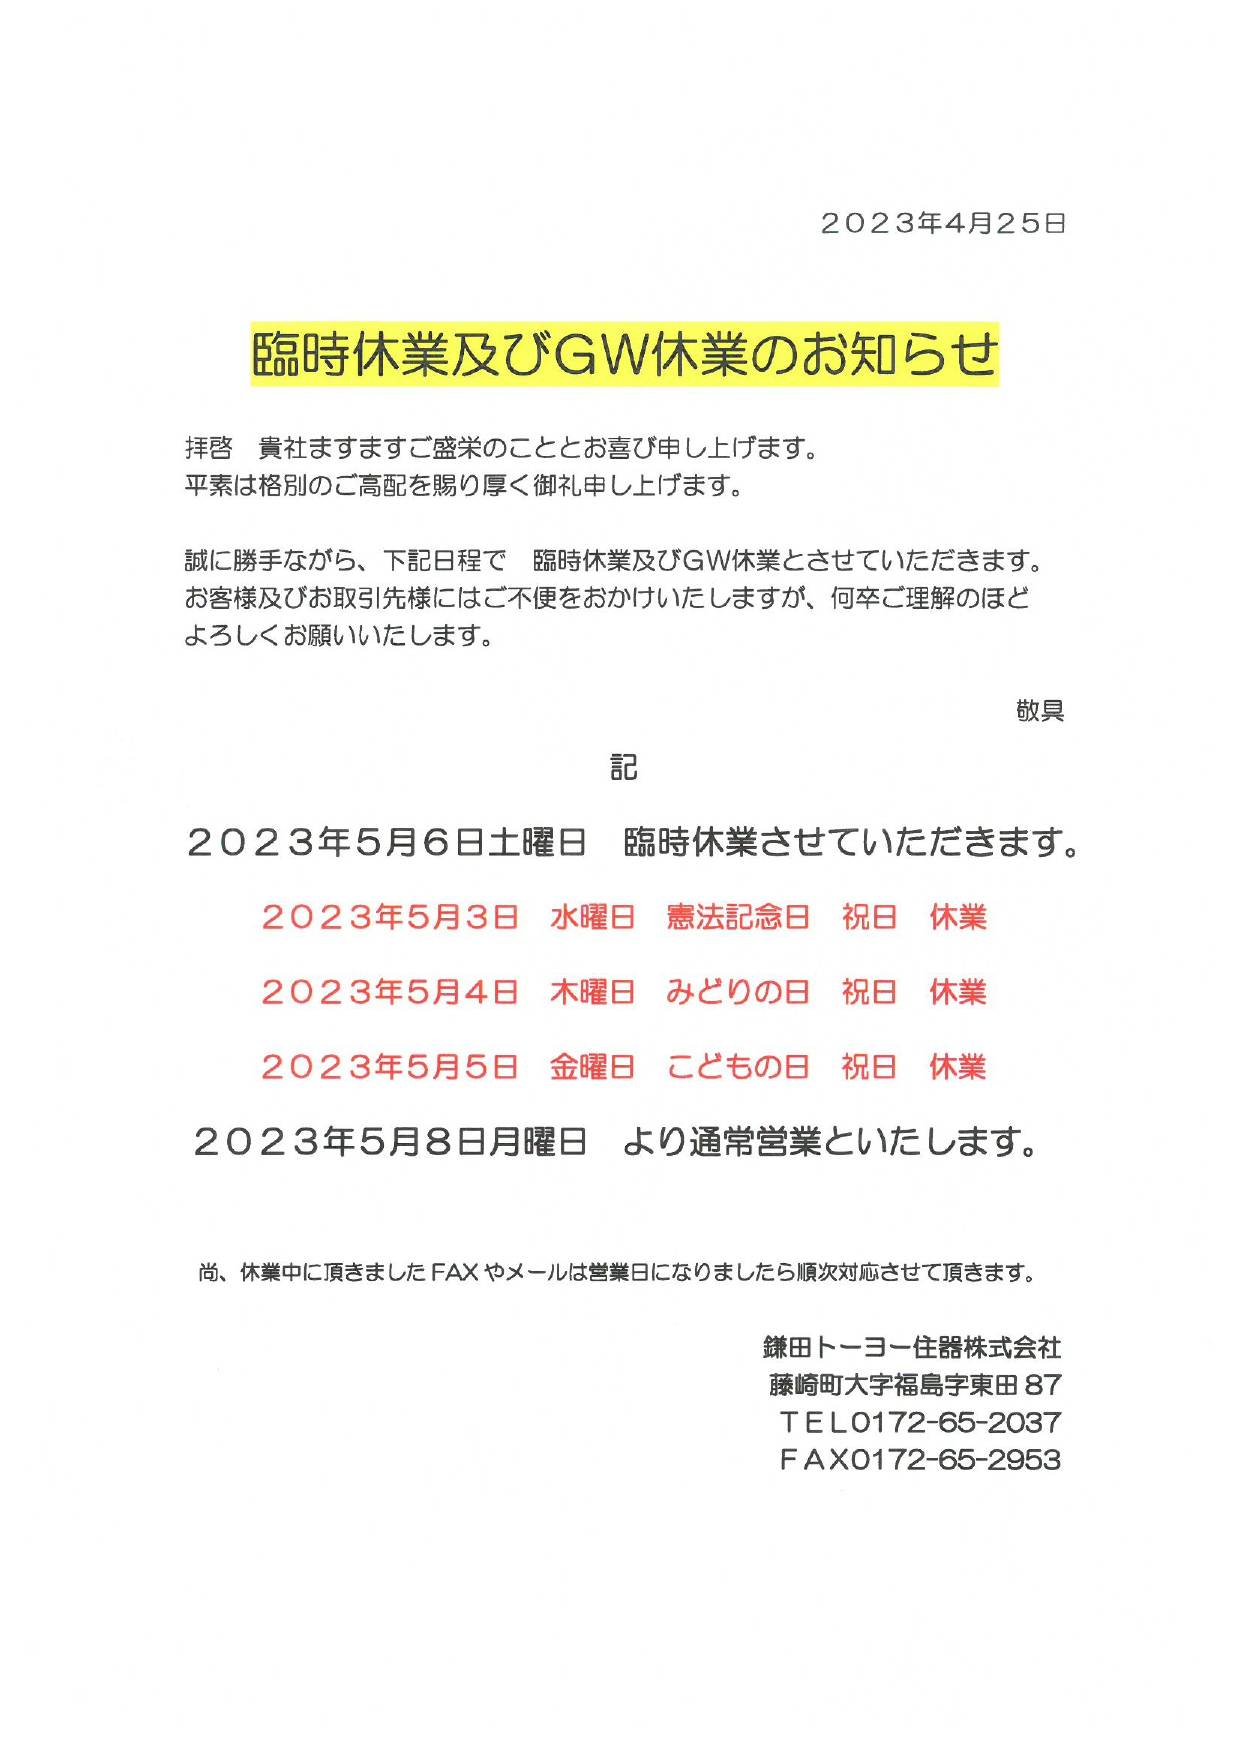 GW休業日のお知らせ。 鎌田トーヨー住器のブログ 写真1